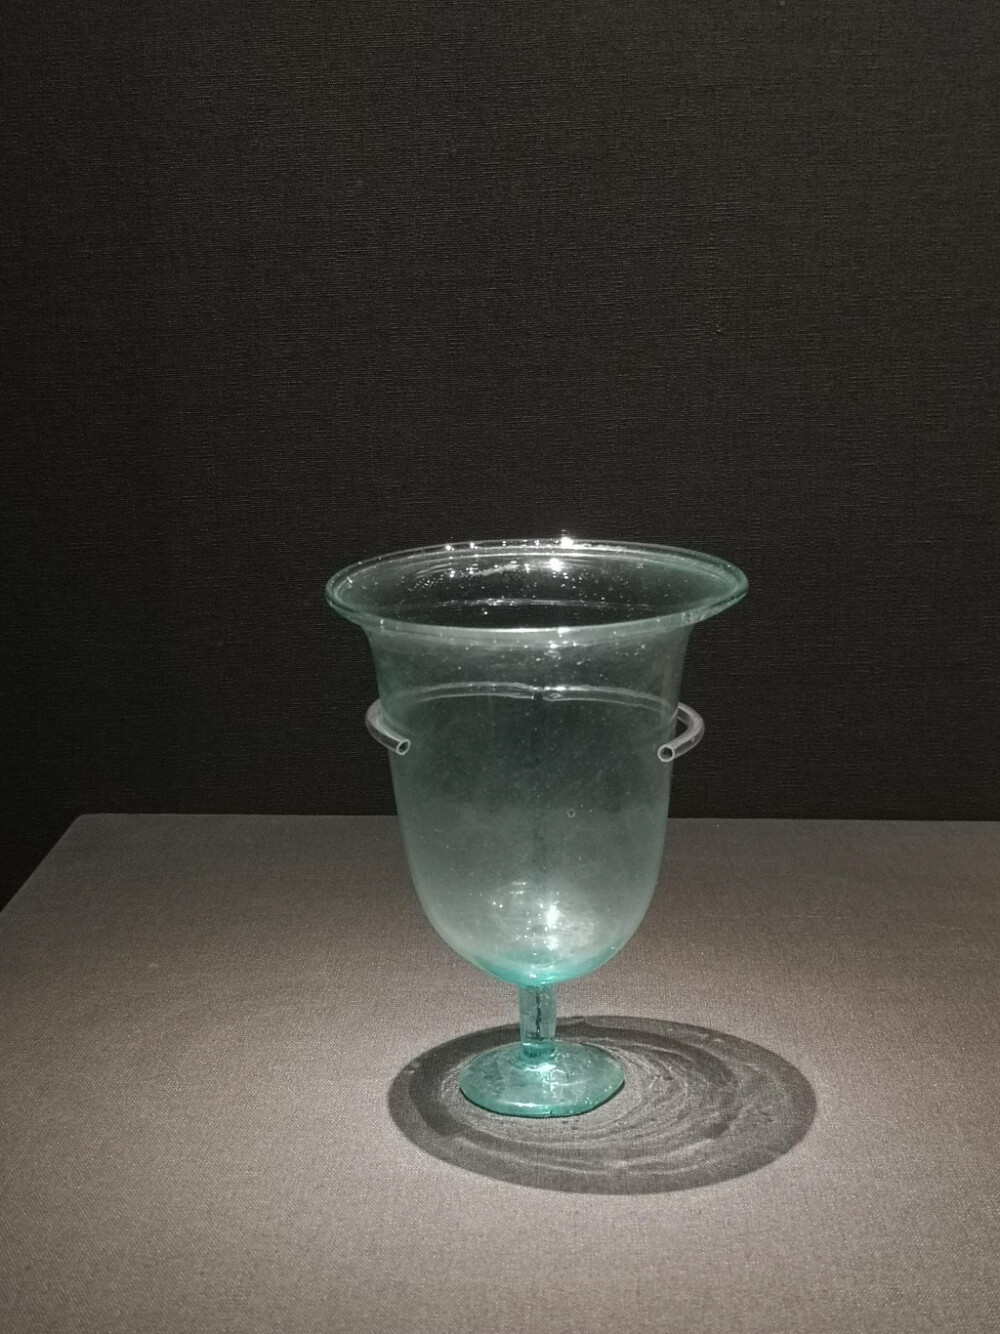 内蒙古通辽市吐尔基山辽代早期墓葬出土的高足玻璃杯，距今近1000年，在当时比金银器还贵重，推测是当时从中亚进口的贵重物品。 ​